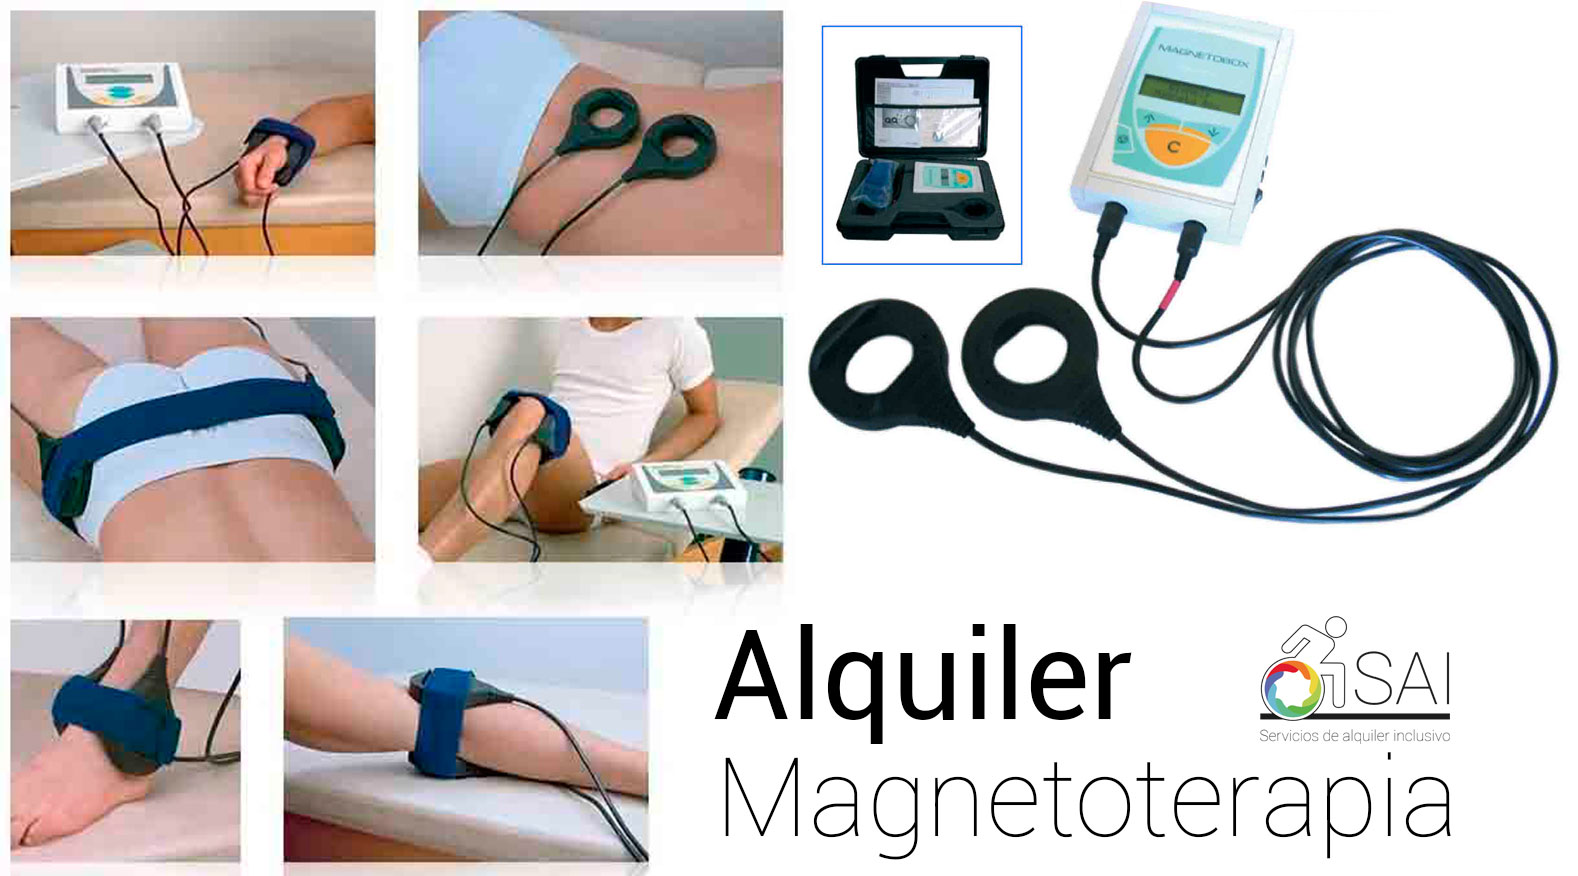 								 Alquiler Magnetoterapia en Hospitalet del Llobregat		